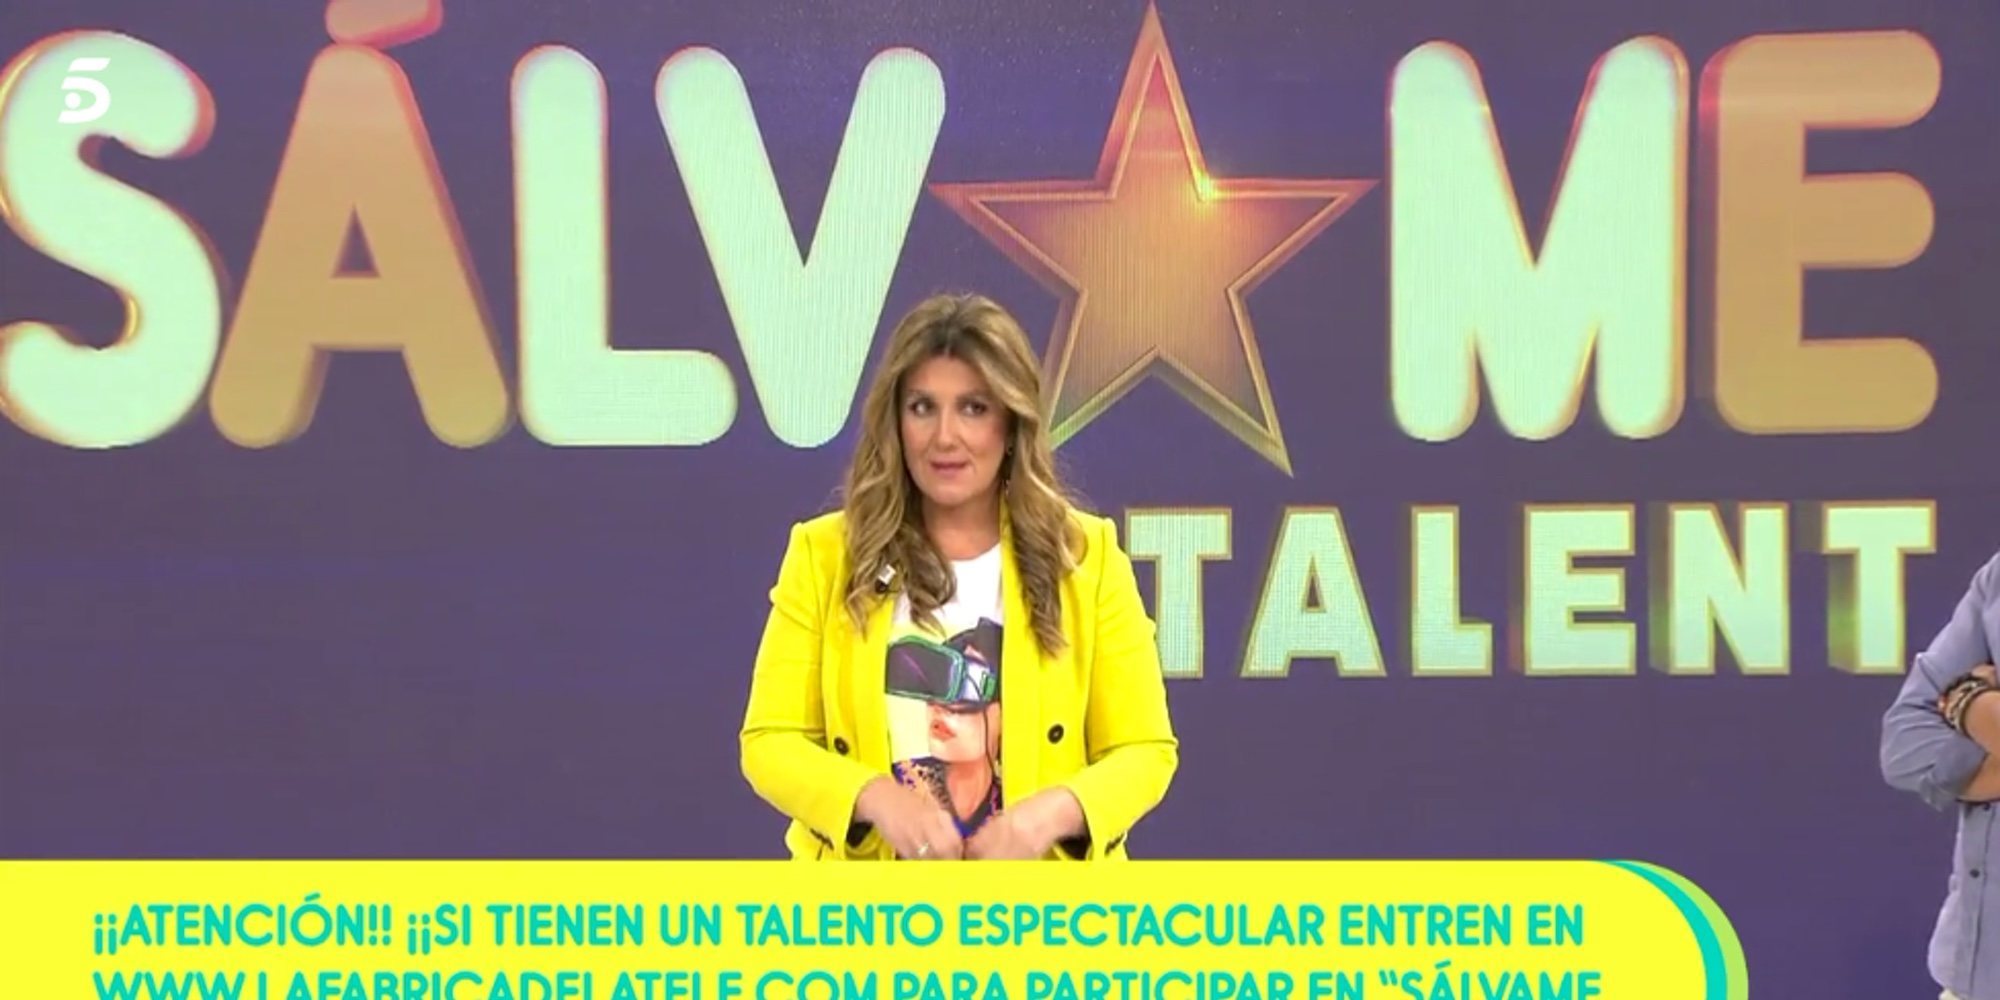 'Sálvame Talent': así es el nuevo programa de Telecinco con 4 colaboradores de 'Sálvame' como jurado